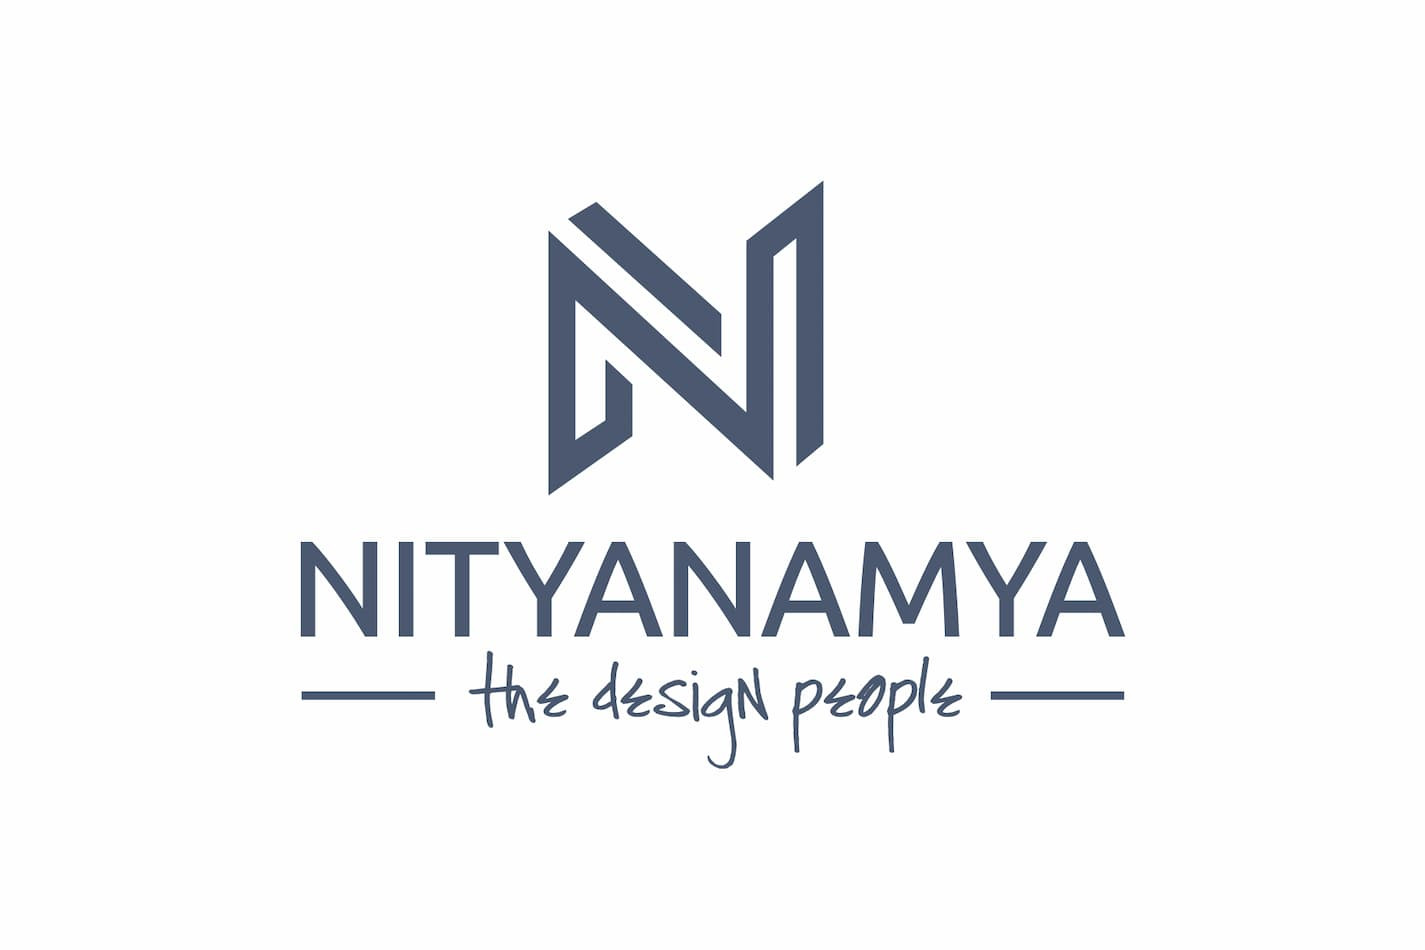 Nitya Namya